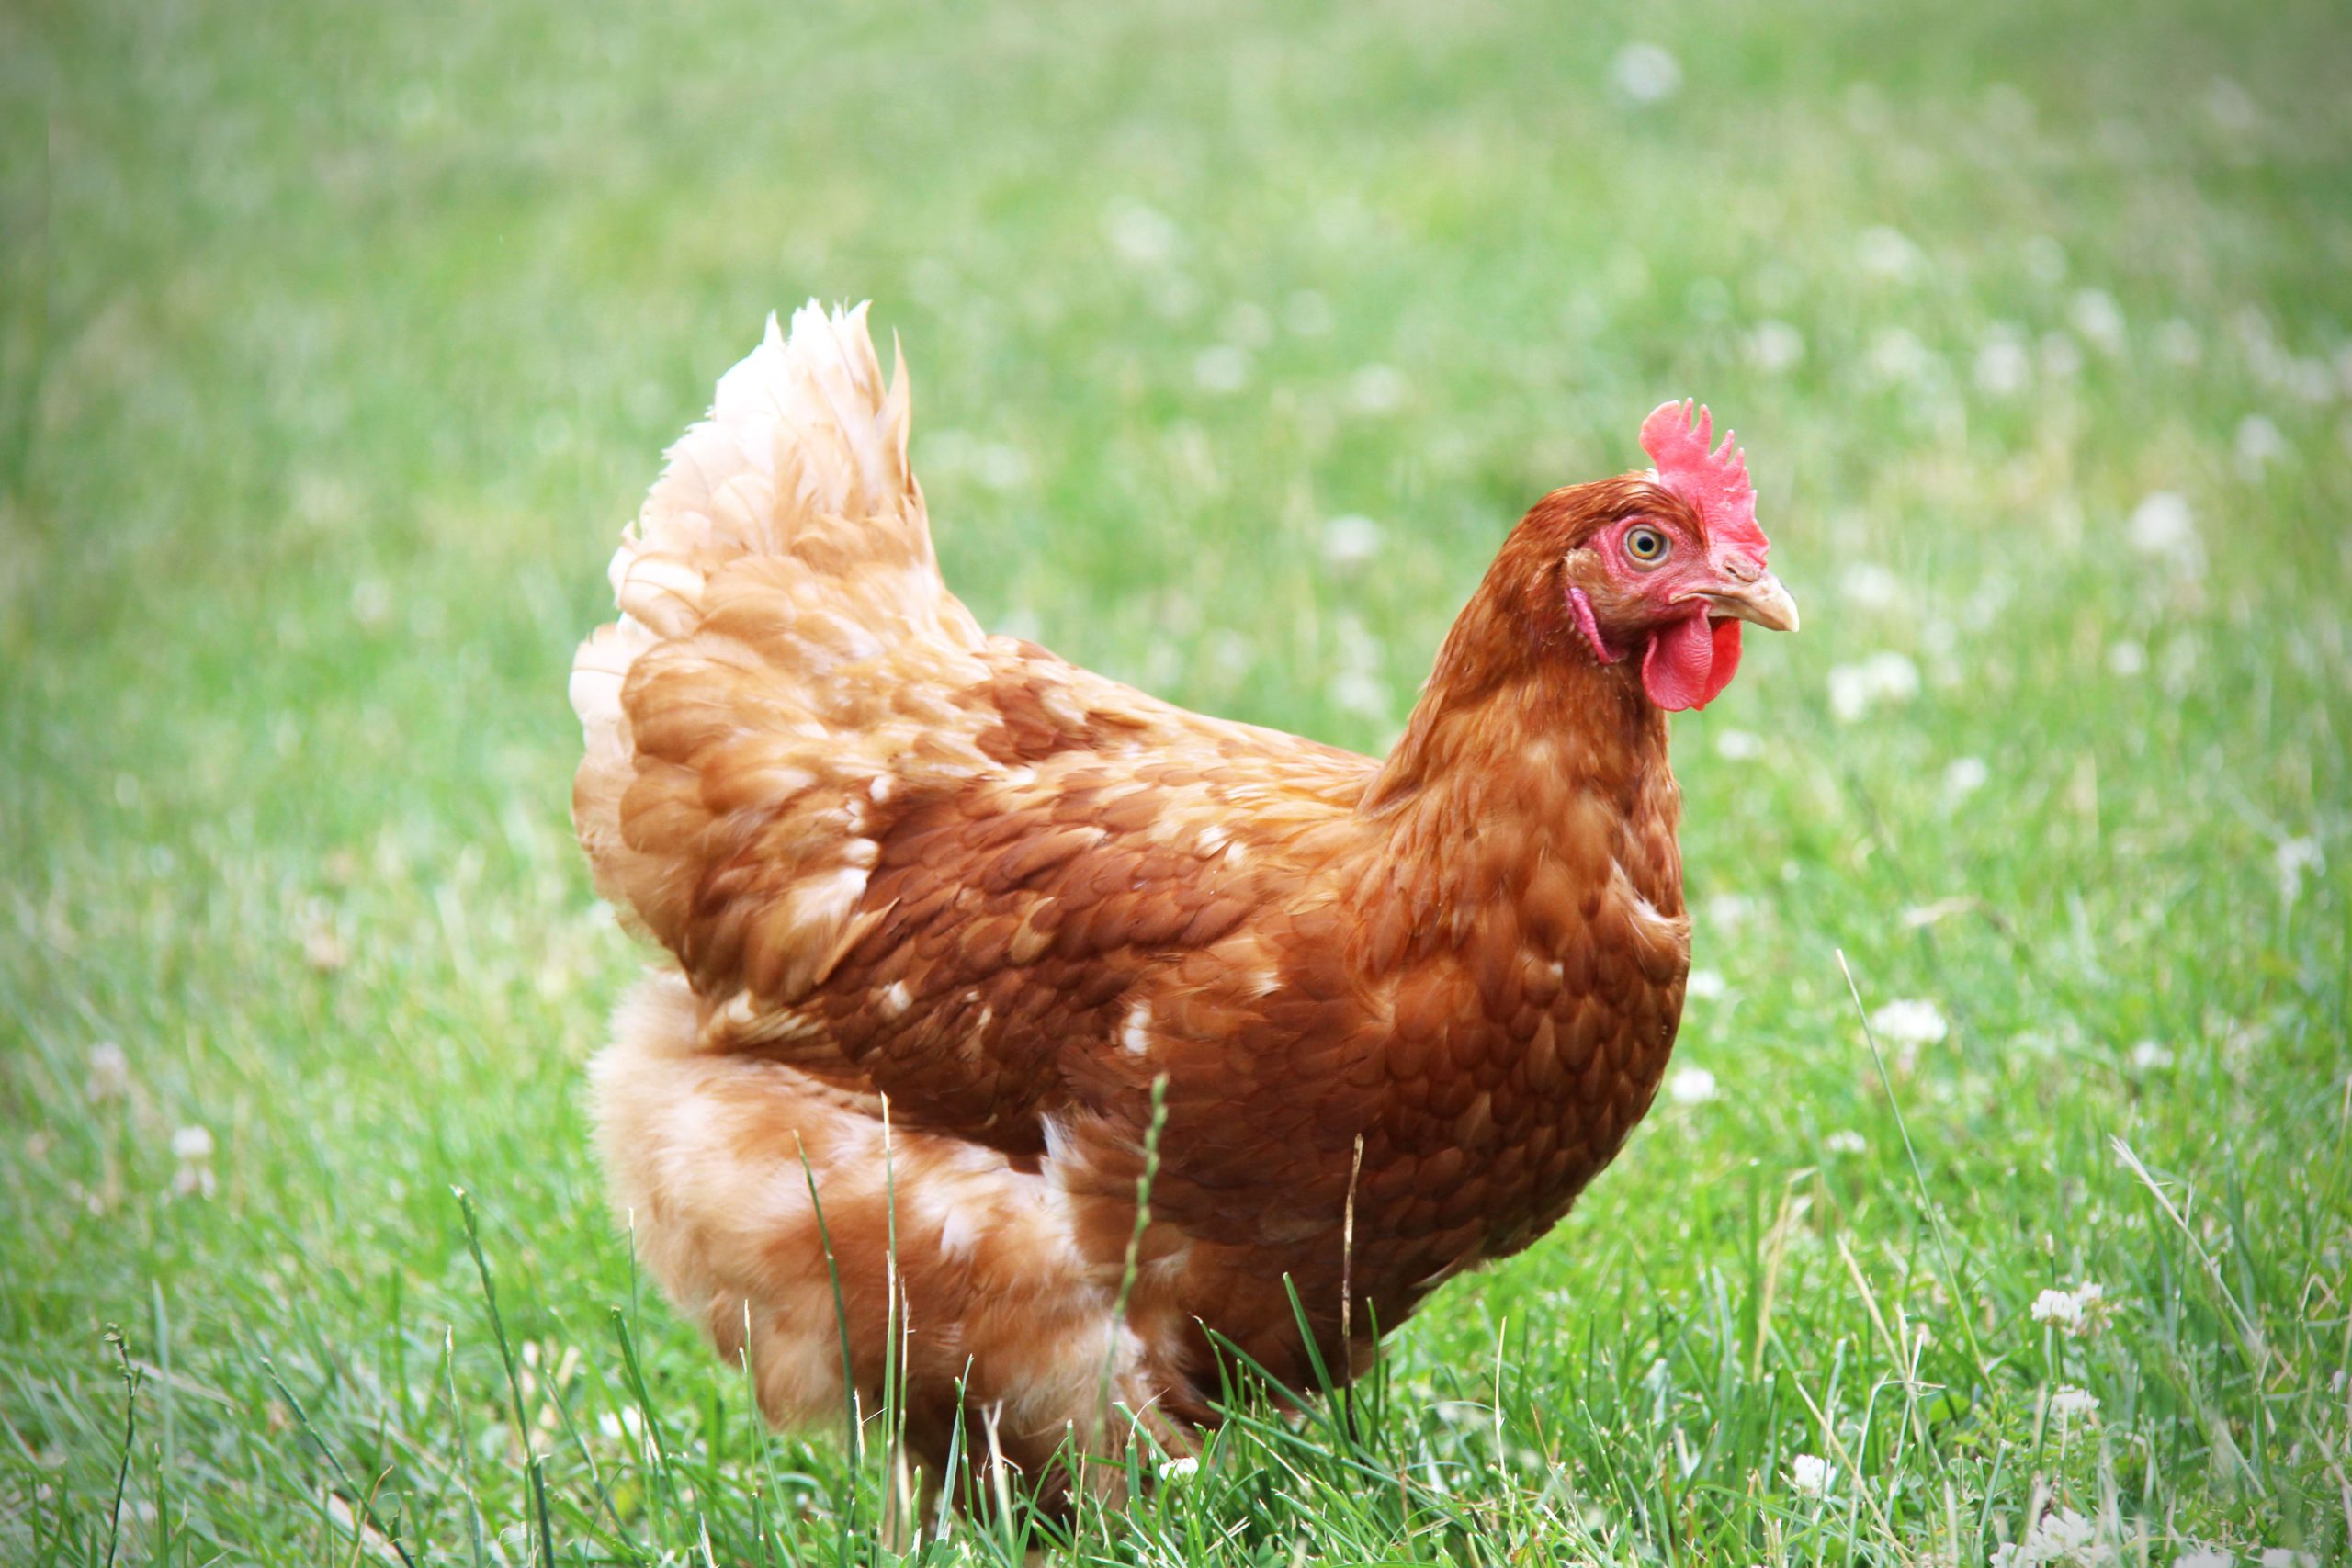 Free-range hen in grassy pasture